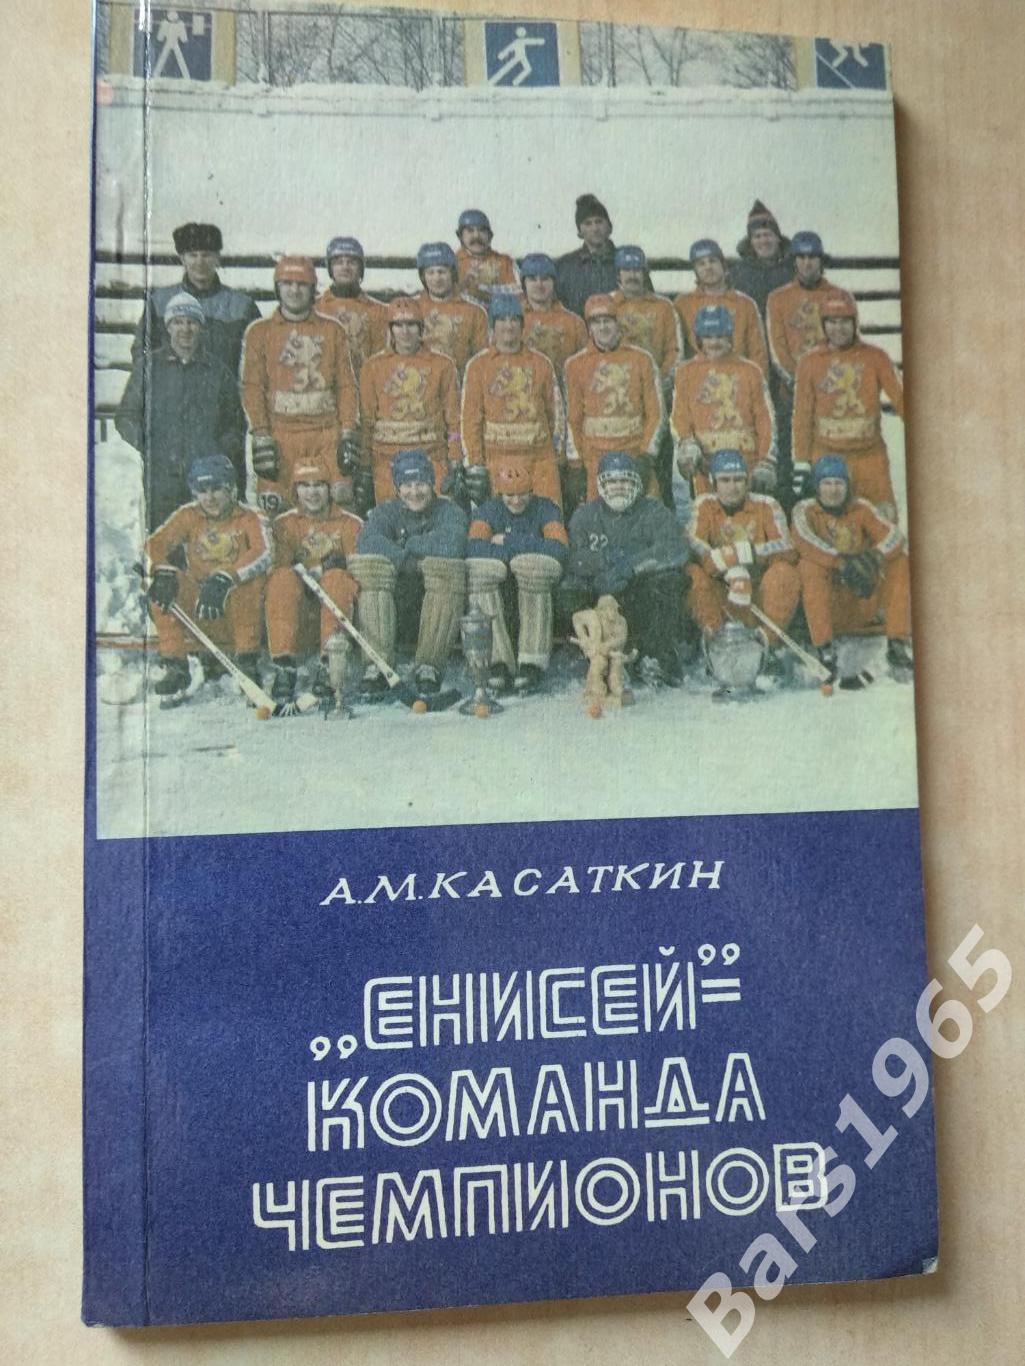 Енисей - команда чемпионов Хоккей с мячом